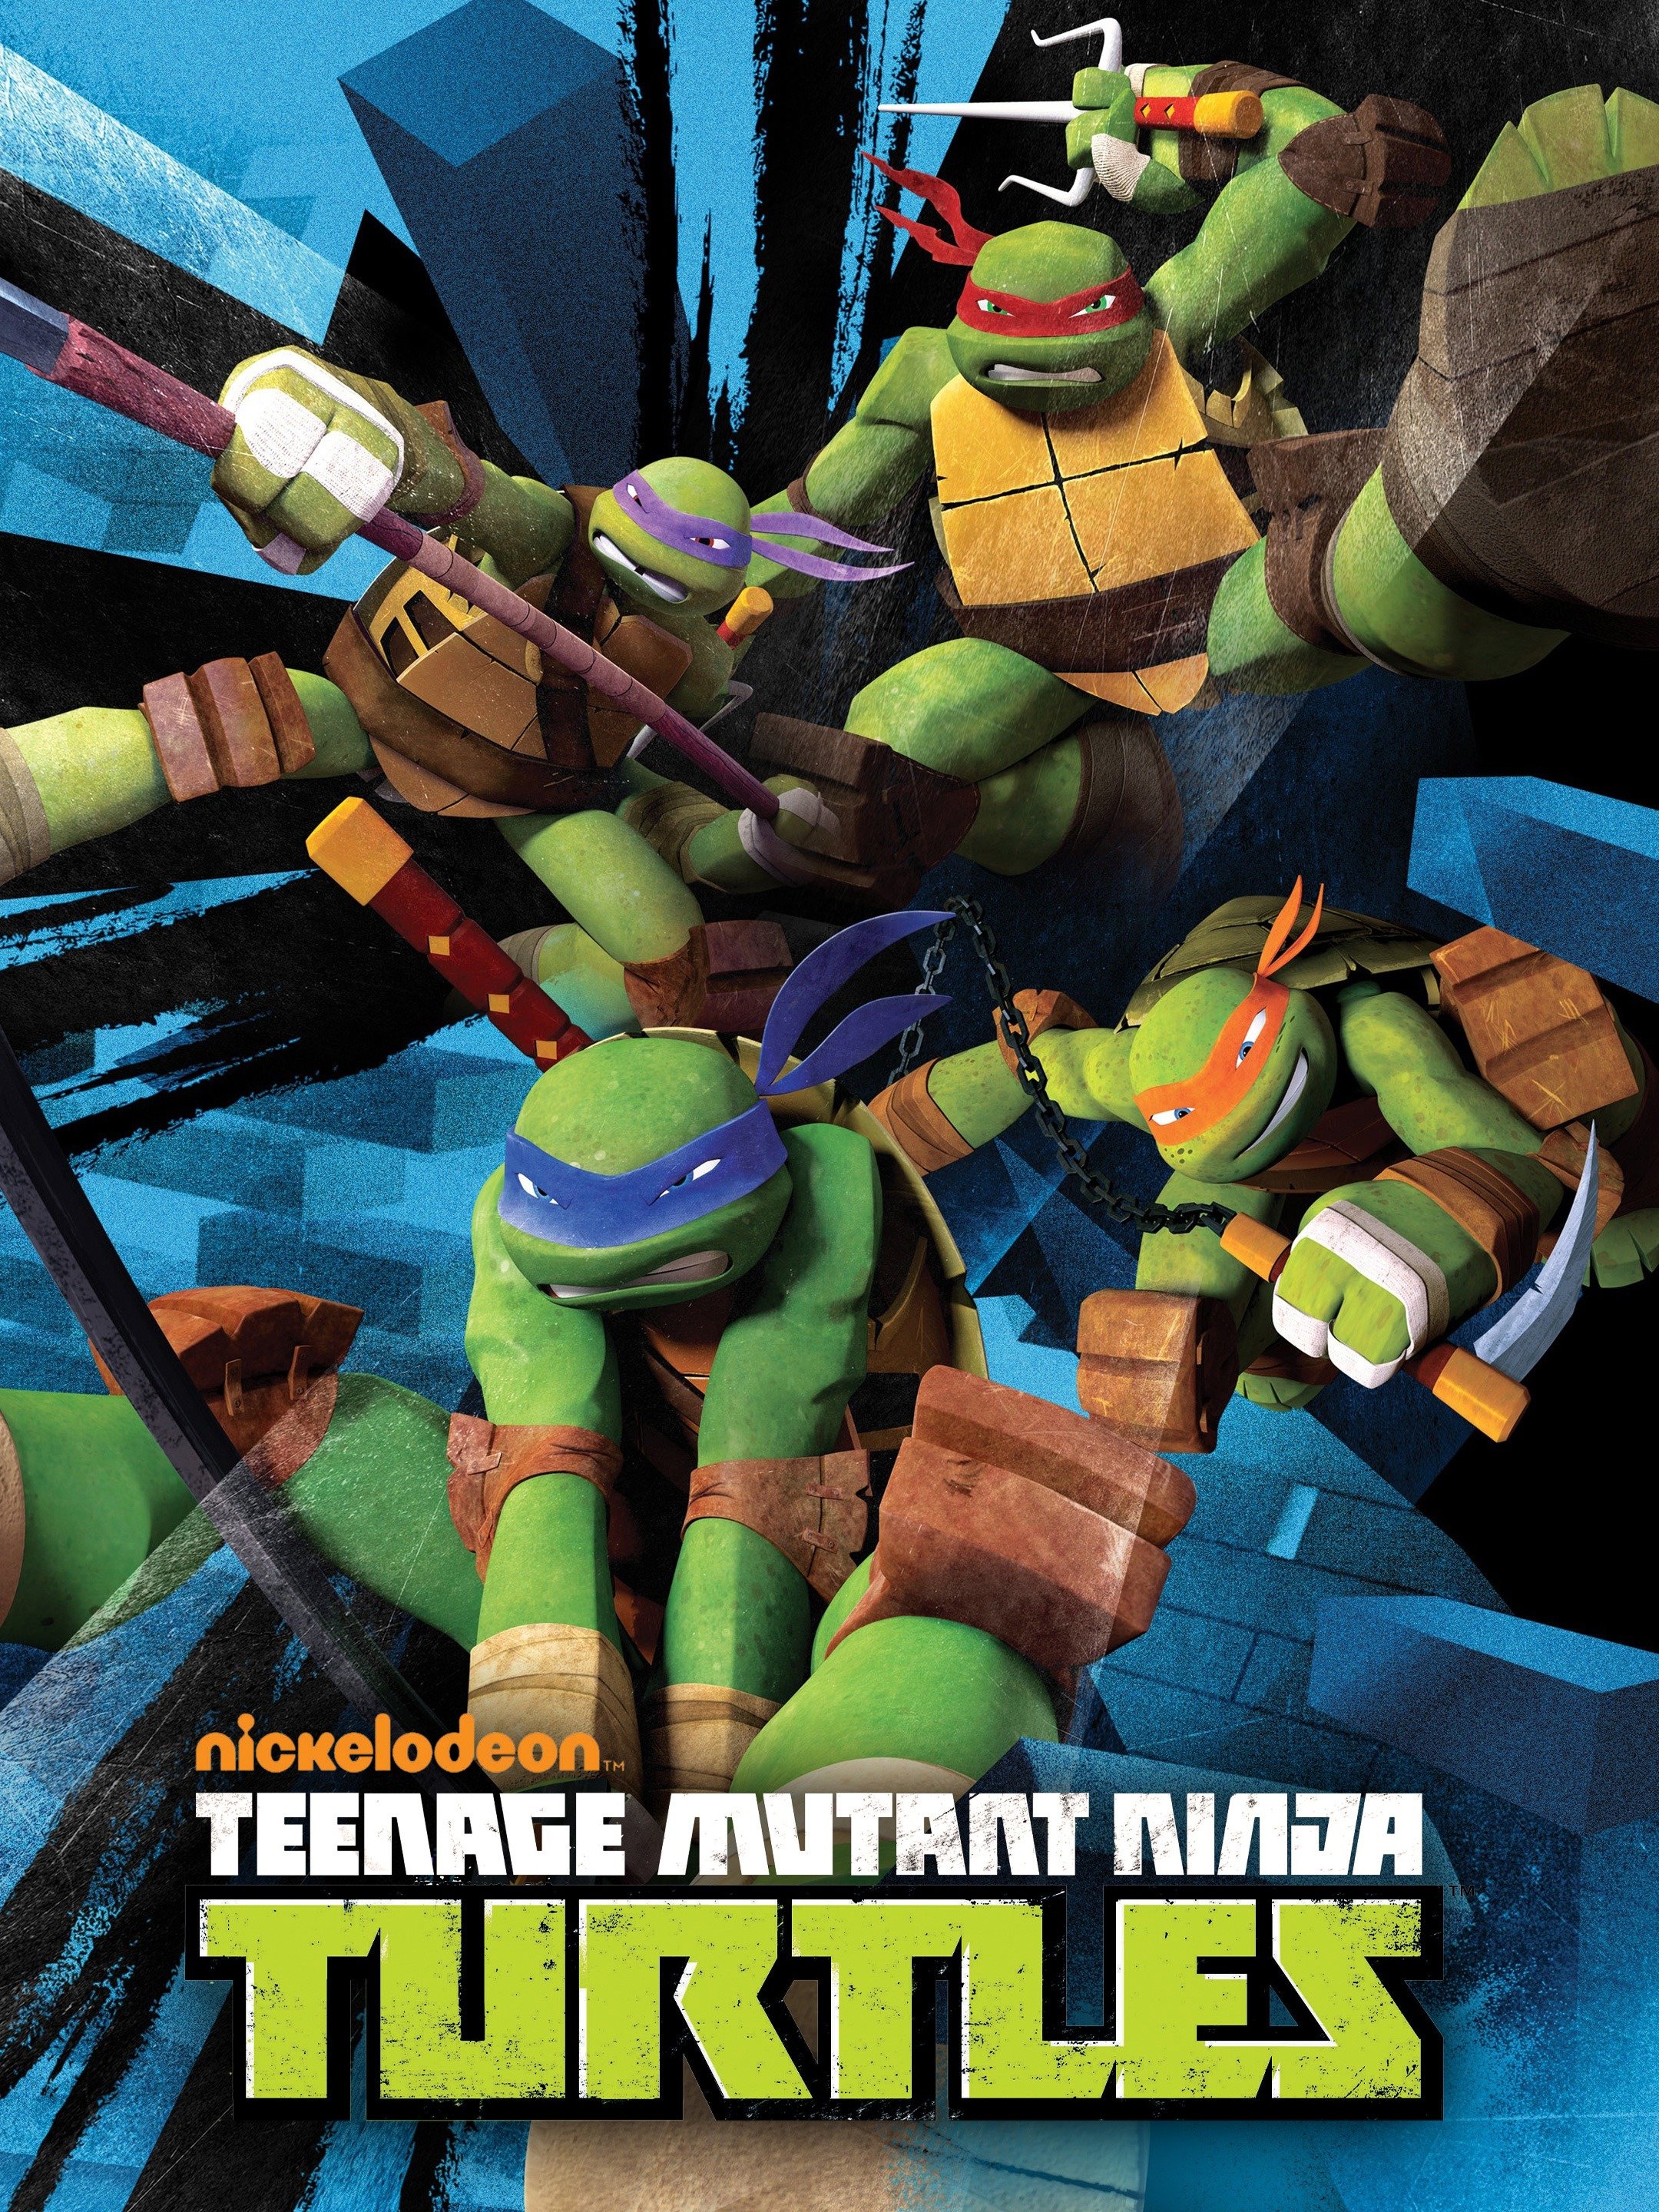 Teenage Mutant Ninja Turtles Season 2 Pictures Rotten Tomatoes